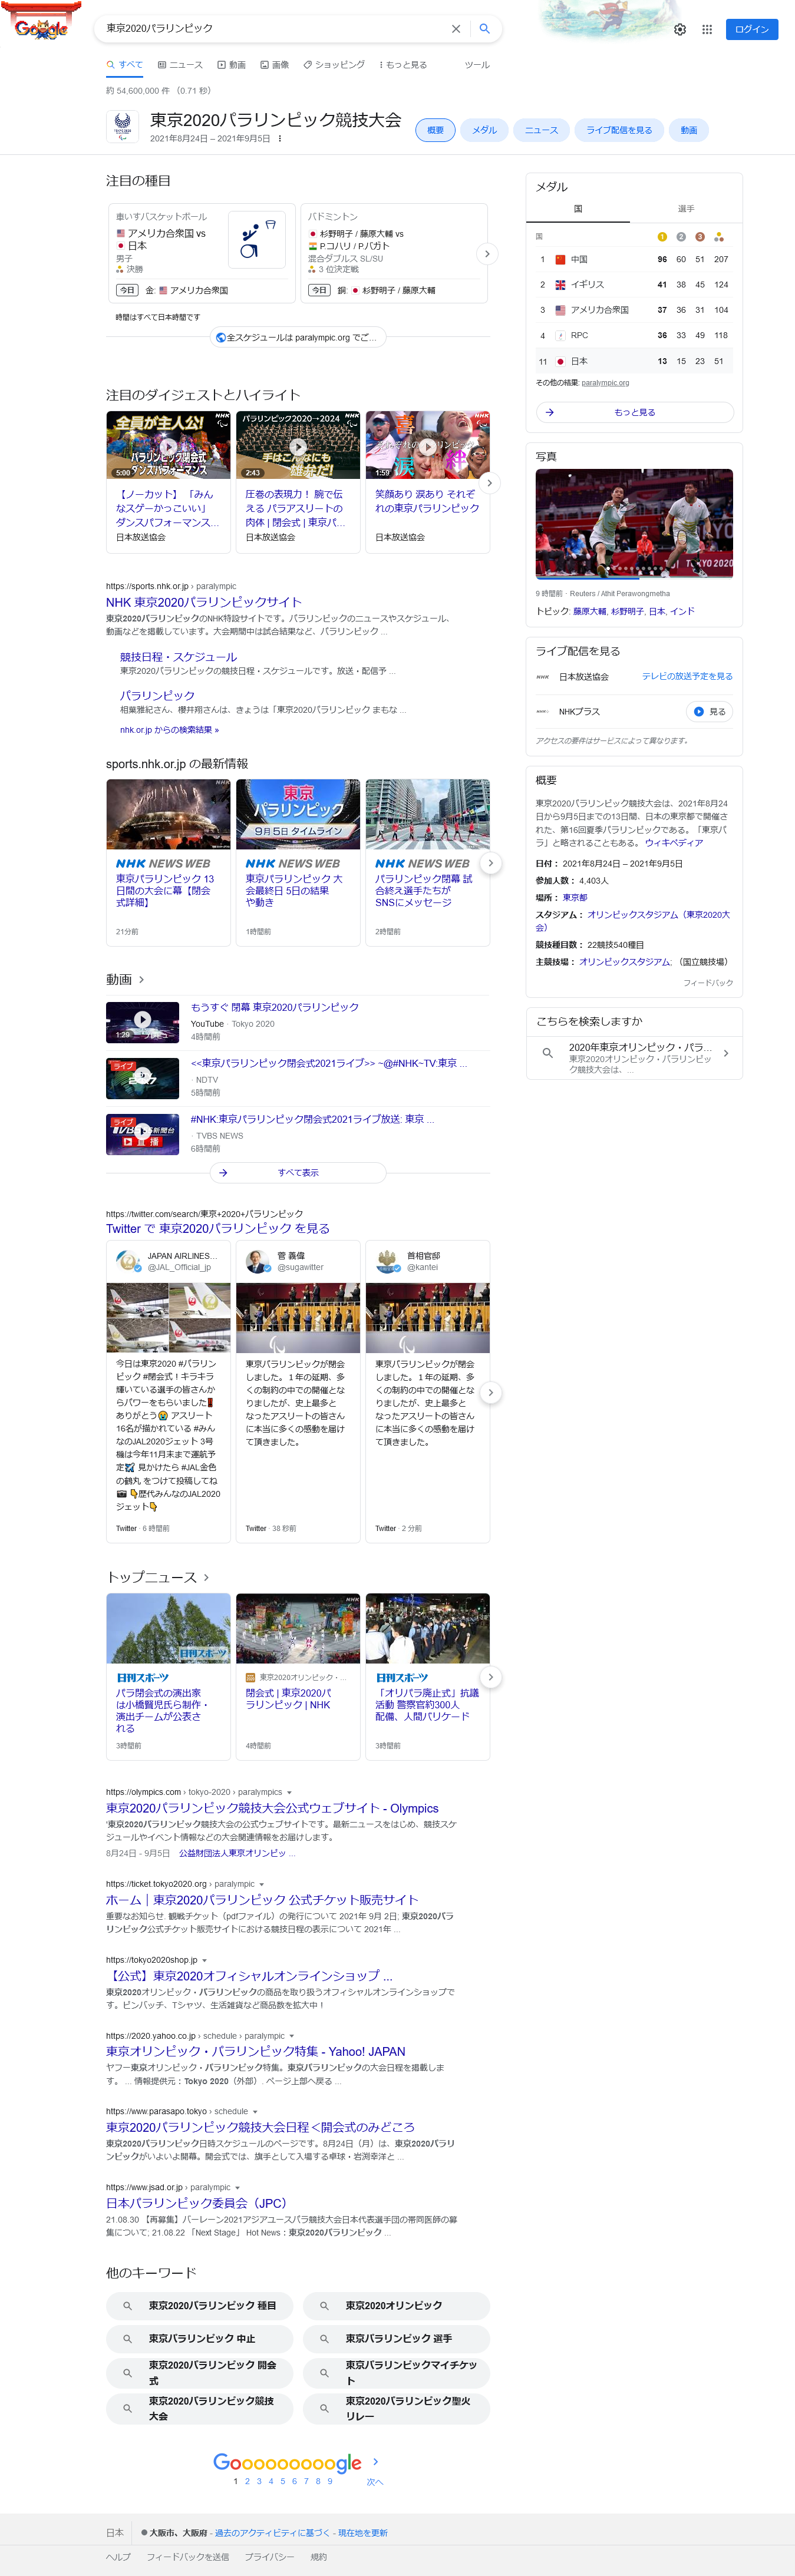 「東京2020パラリンピック」のGoogleにおける検索結果 2021年9月5日23時59分